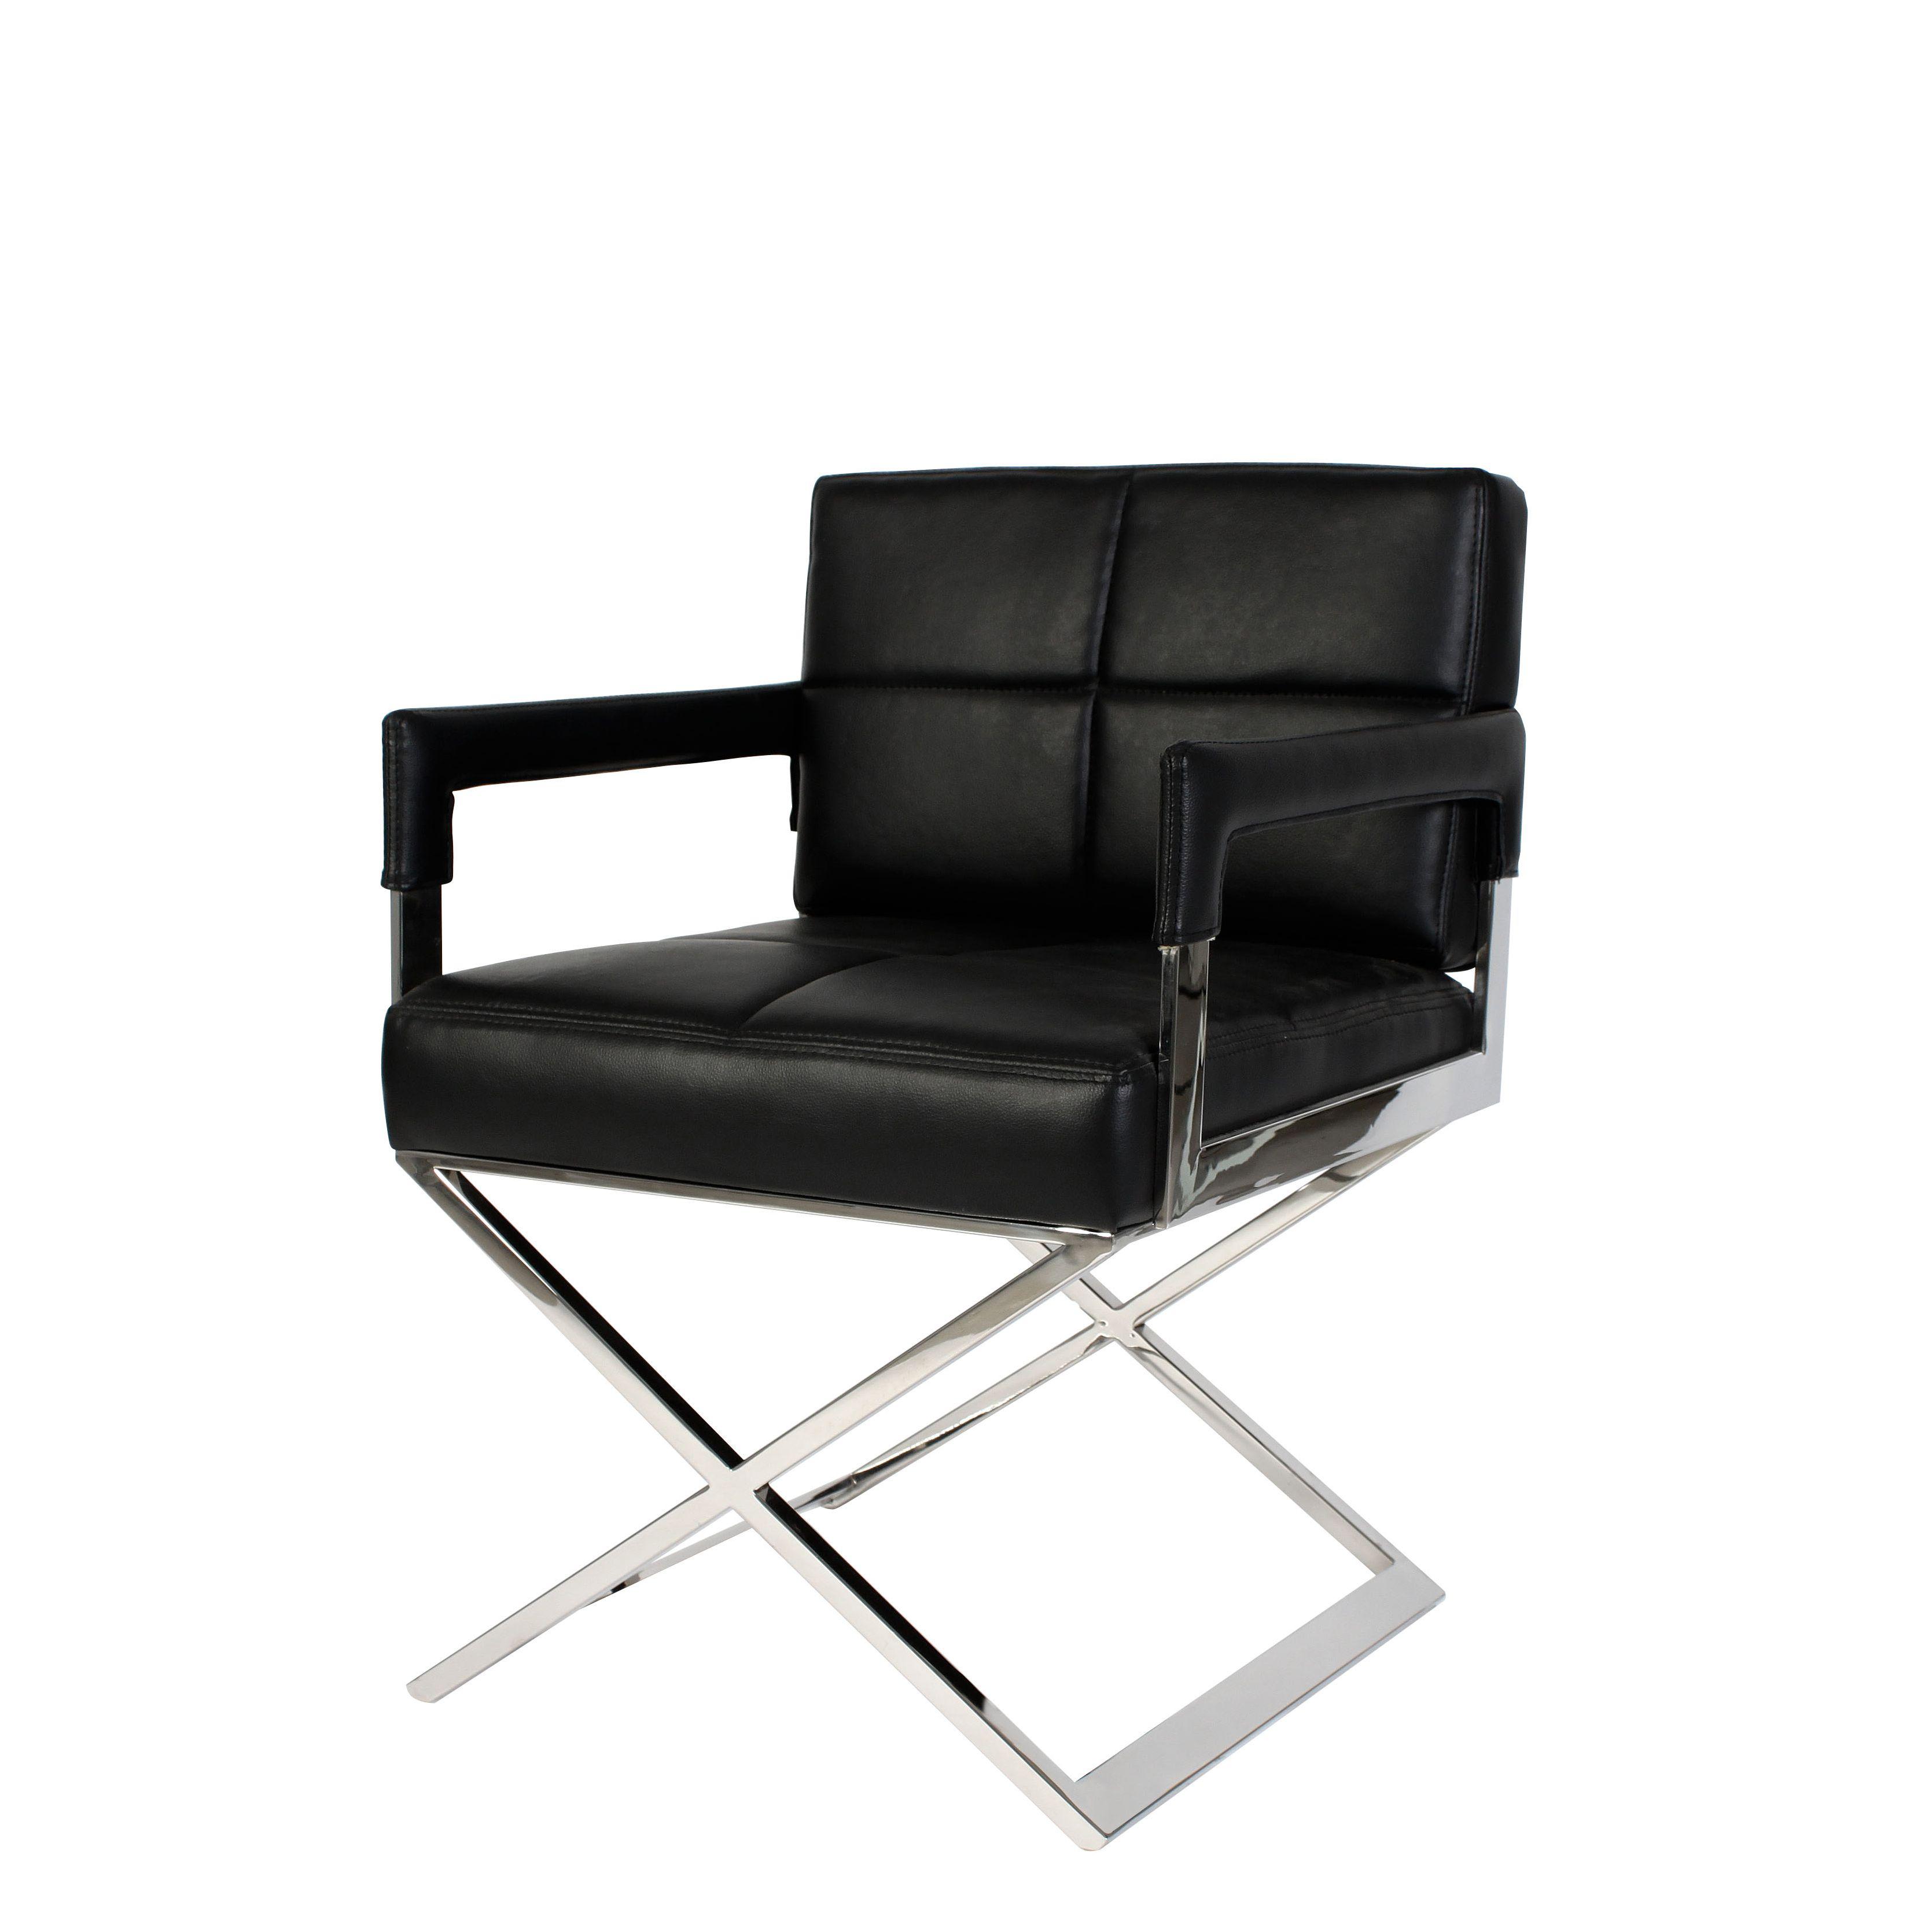 Купить Кресло/Рабочее кресло Desk Chair Cross в интернет-магазине roooms.ru